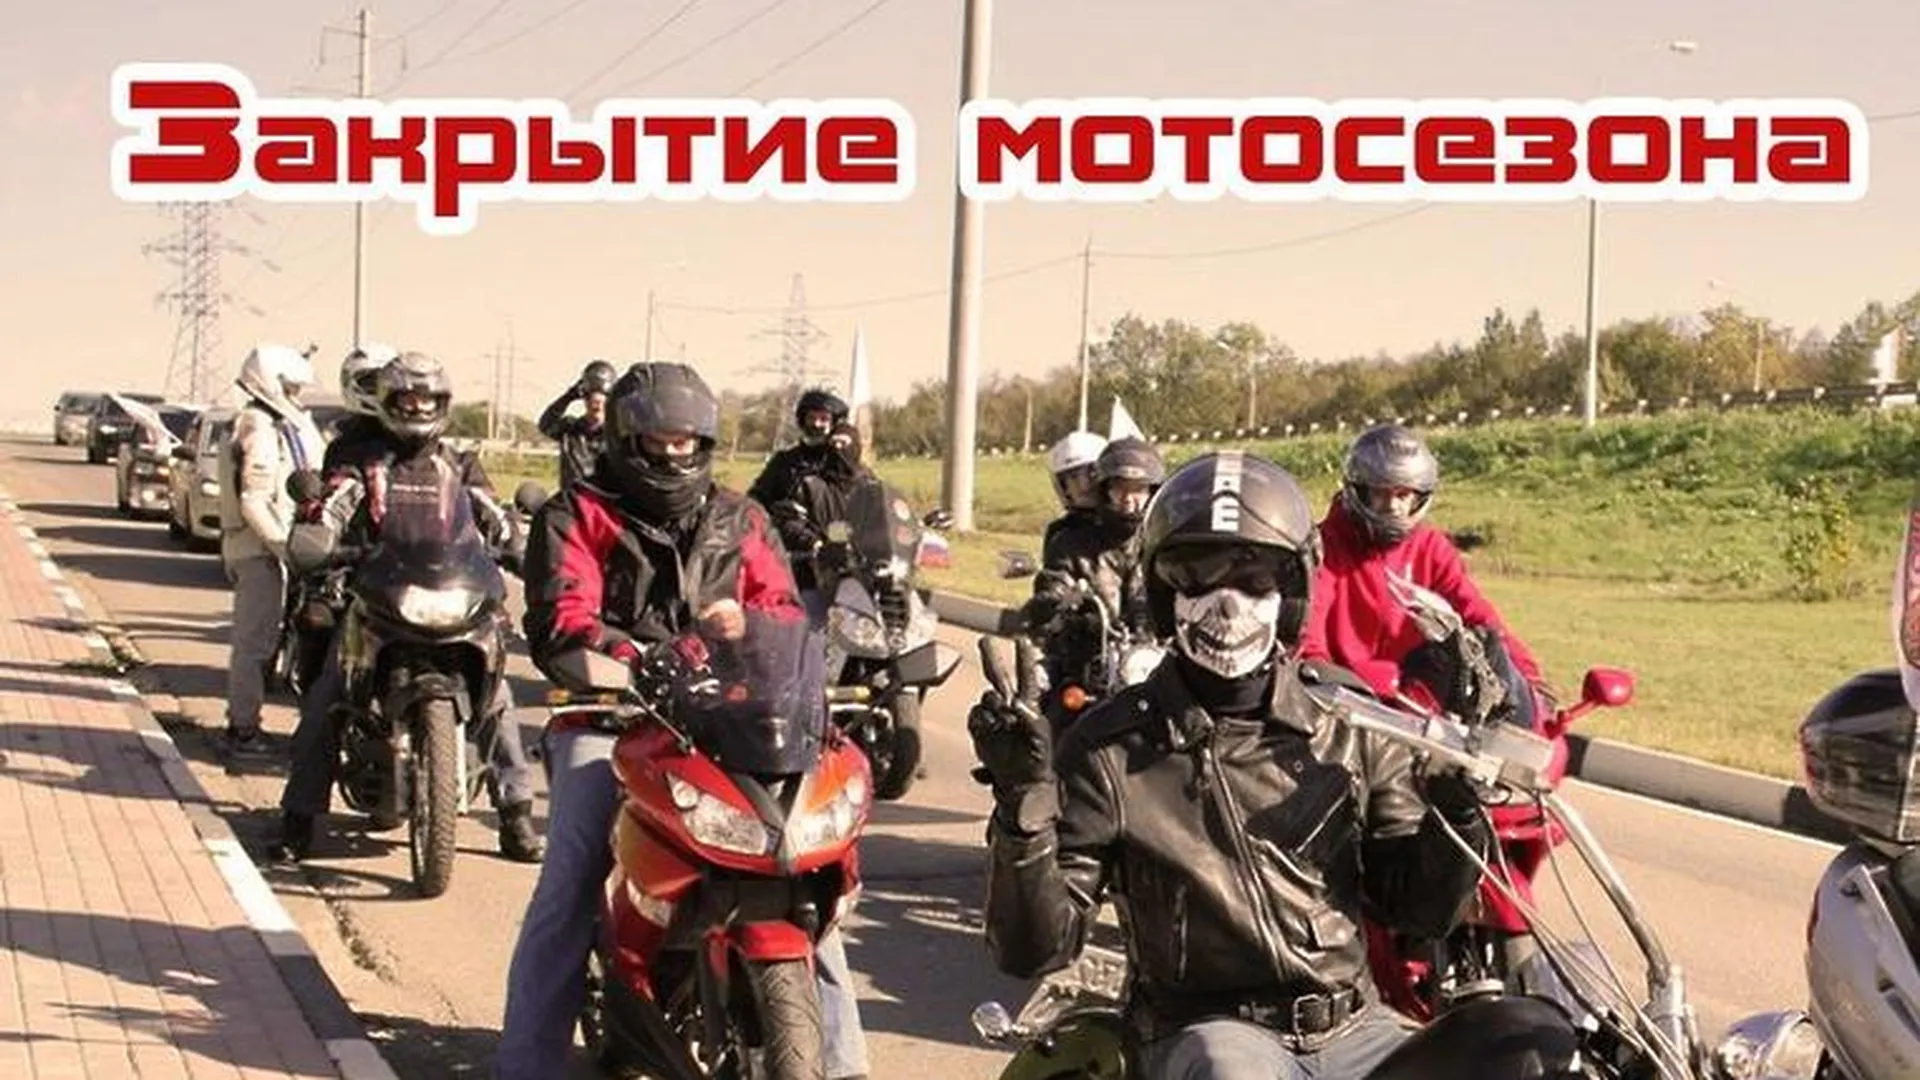 Жители Подольска могут увидеть мототрюки и файер-шоу на закрытии мотосезона в субботу